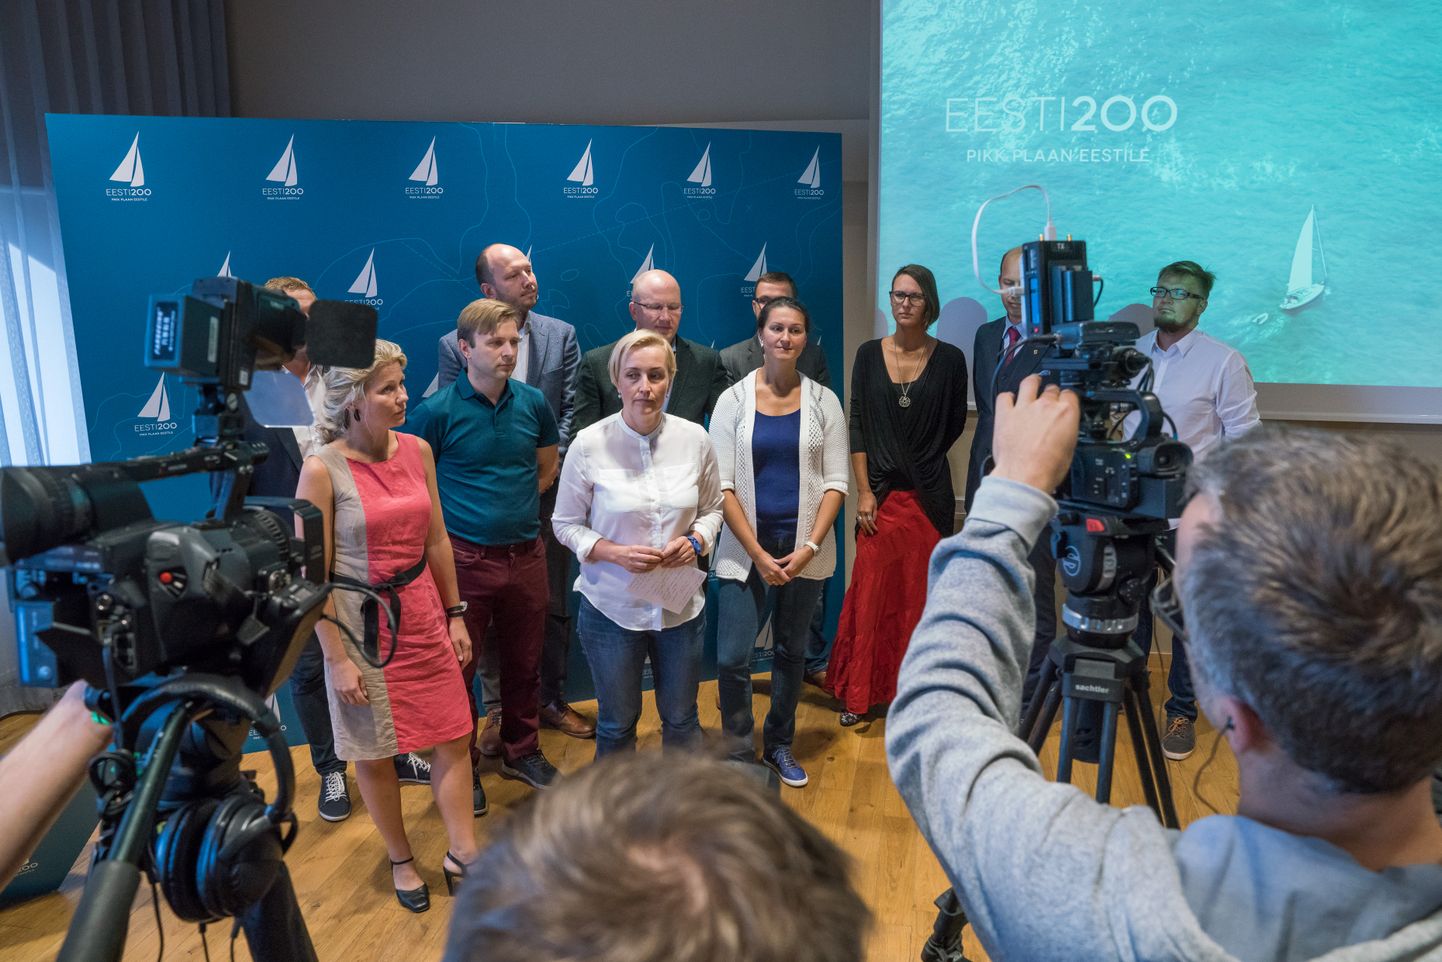 Политическая сила "Эстония 200" объявила, что осенью создаст партию.